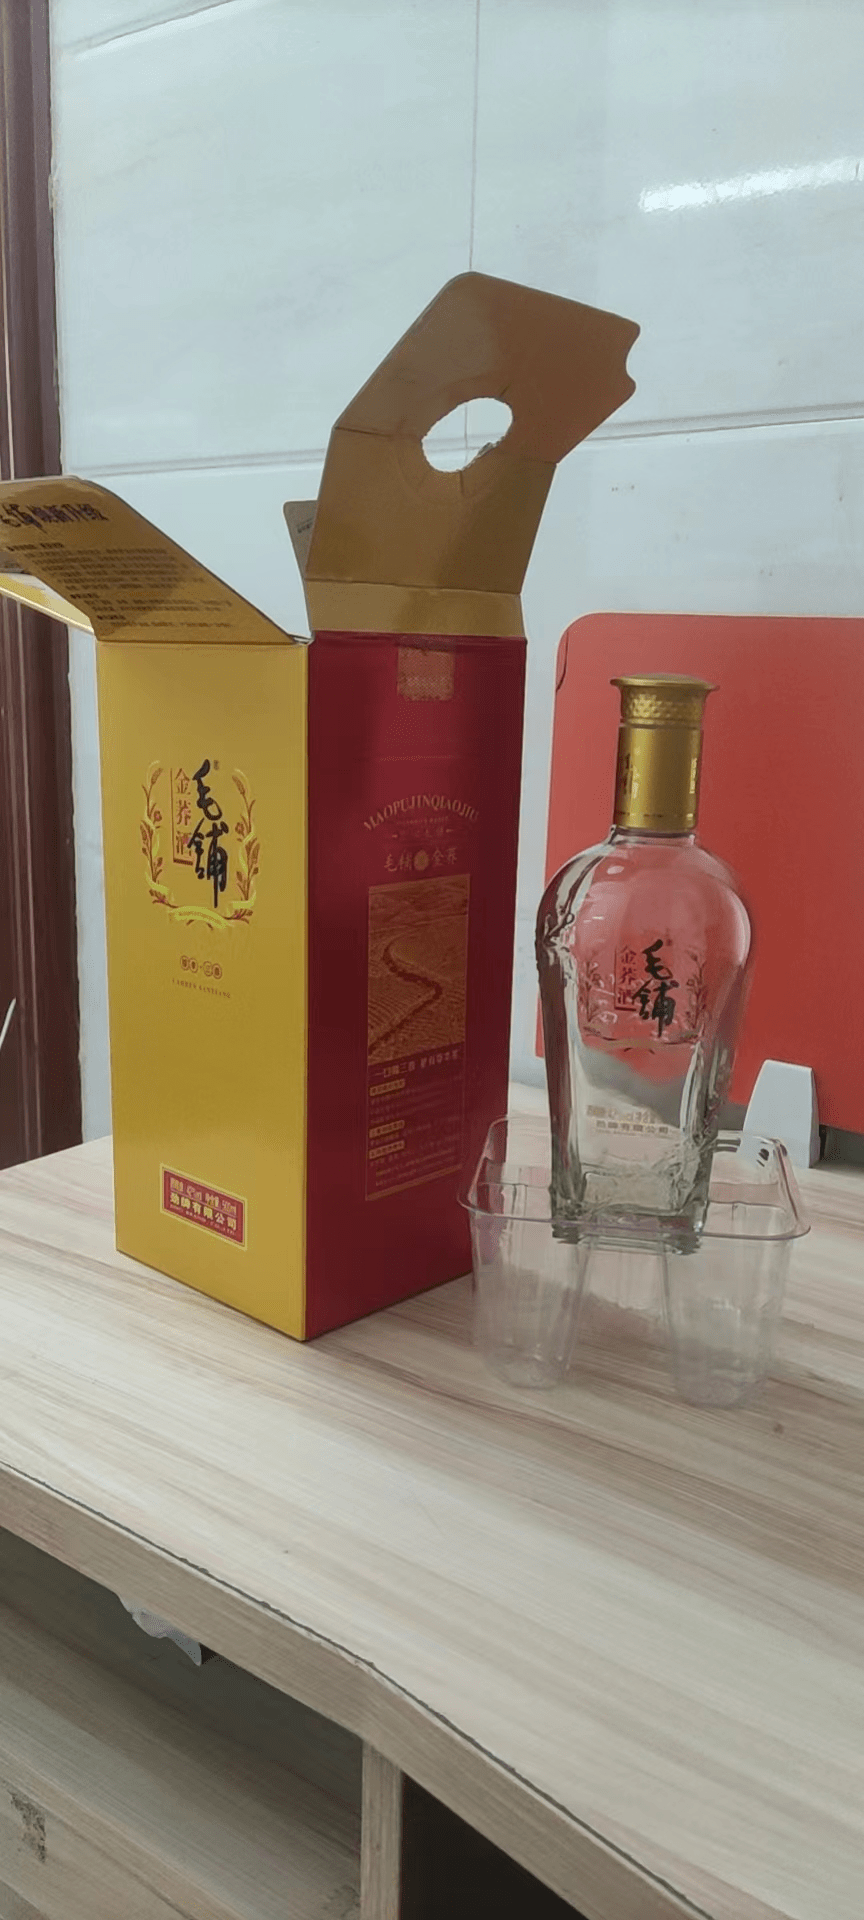 白酒包装盒作用,广州包装盒厂家说明利用礼盒外观吸引消费者